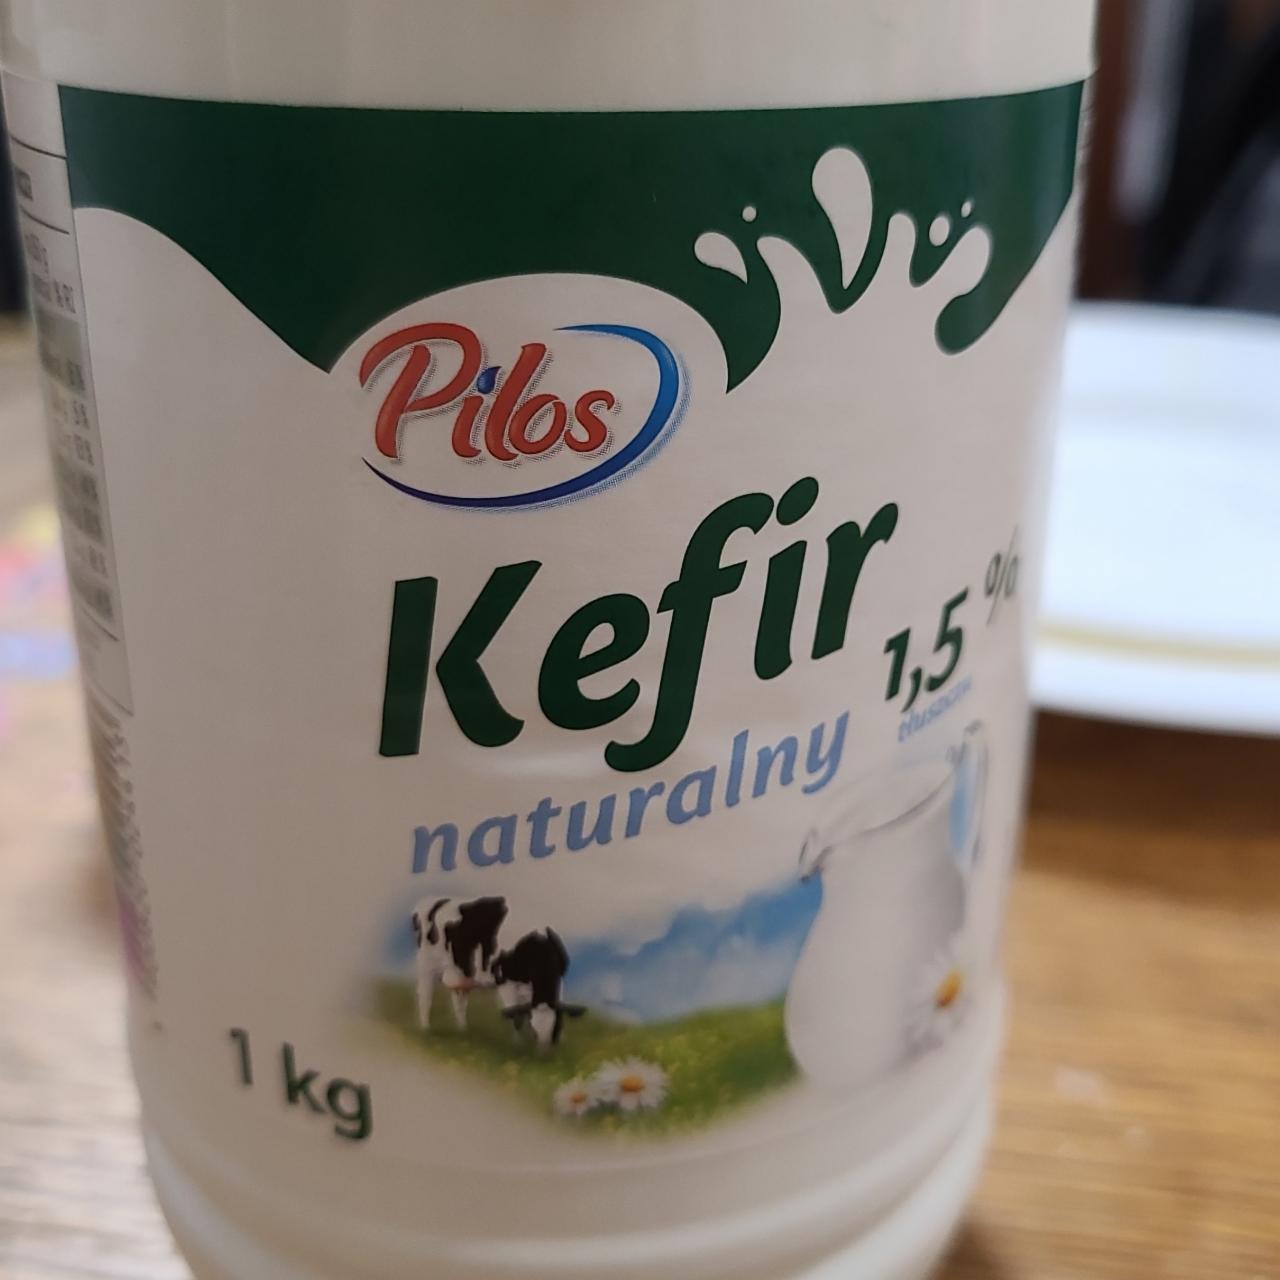 Zdjęcia - kefir naturalny 1.5 % Pilos